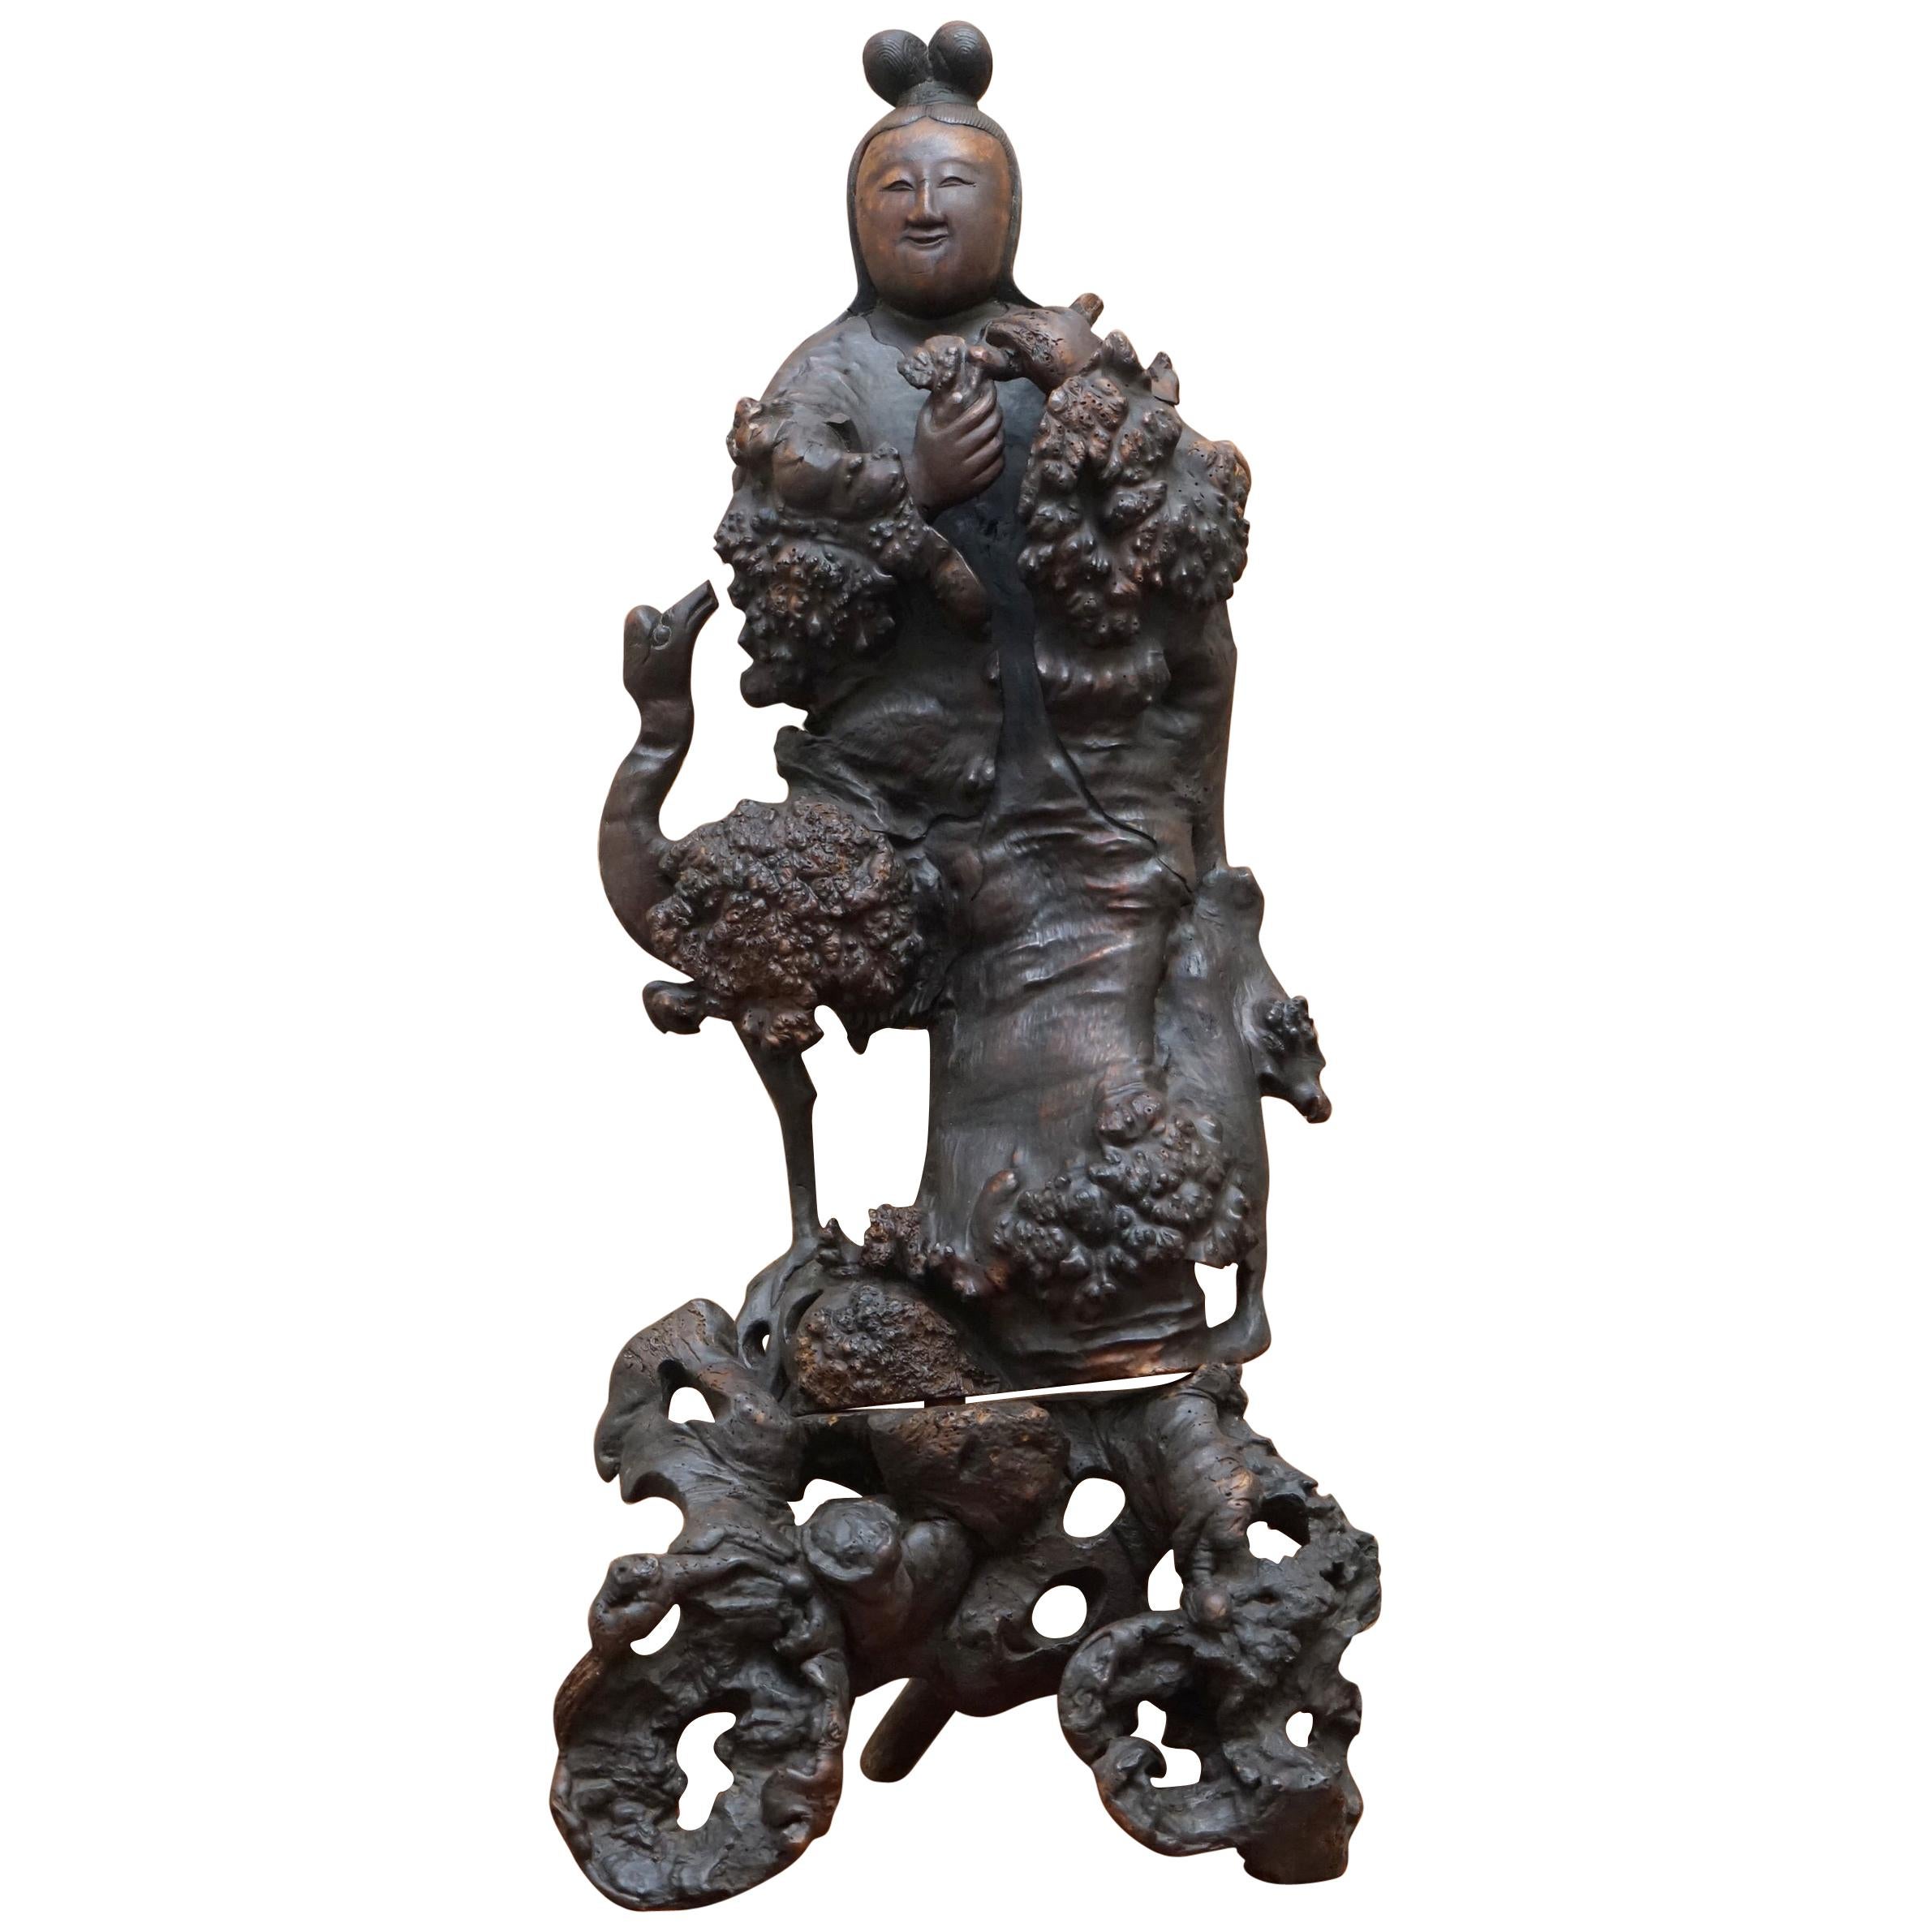 Ancienne sculpture en bois de racine chinoise datant d'environ 1880 représentant un bouddhiste en guise de sagesse, très détectée en vente